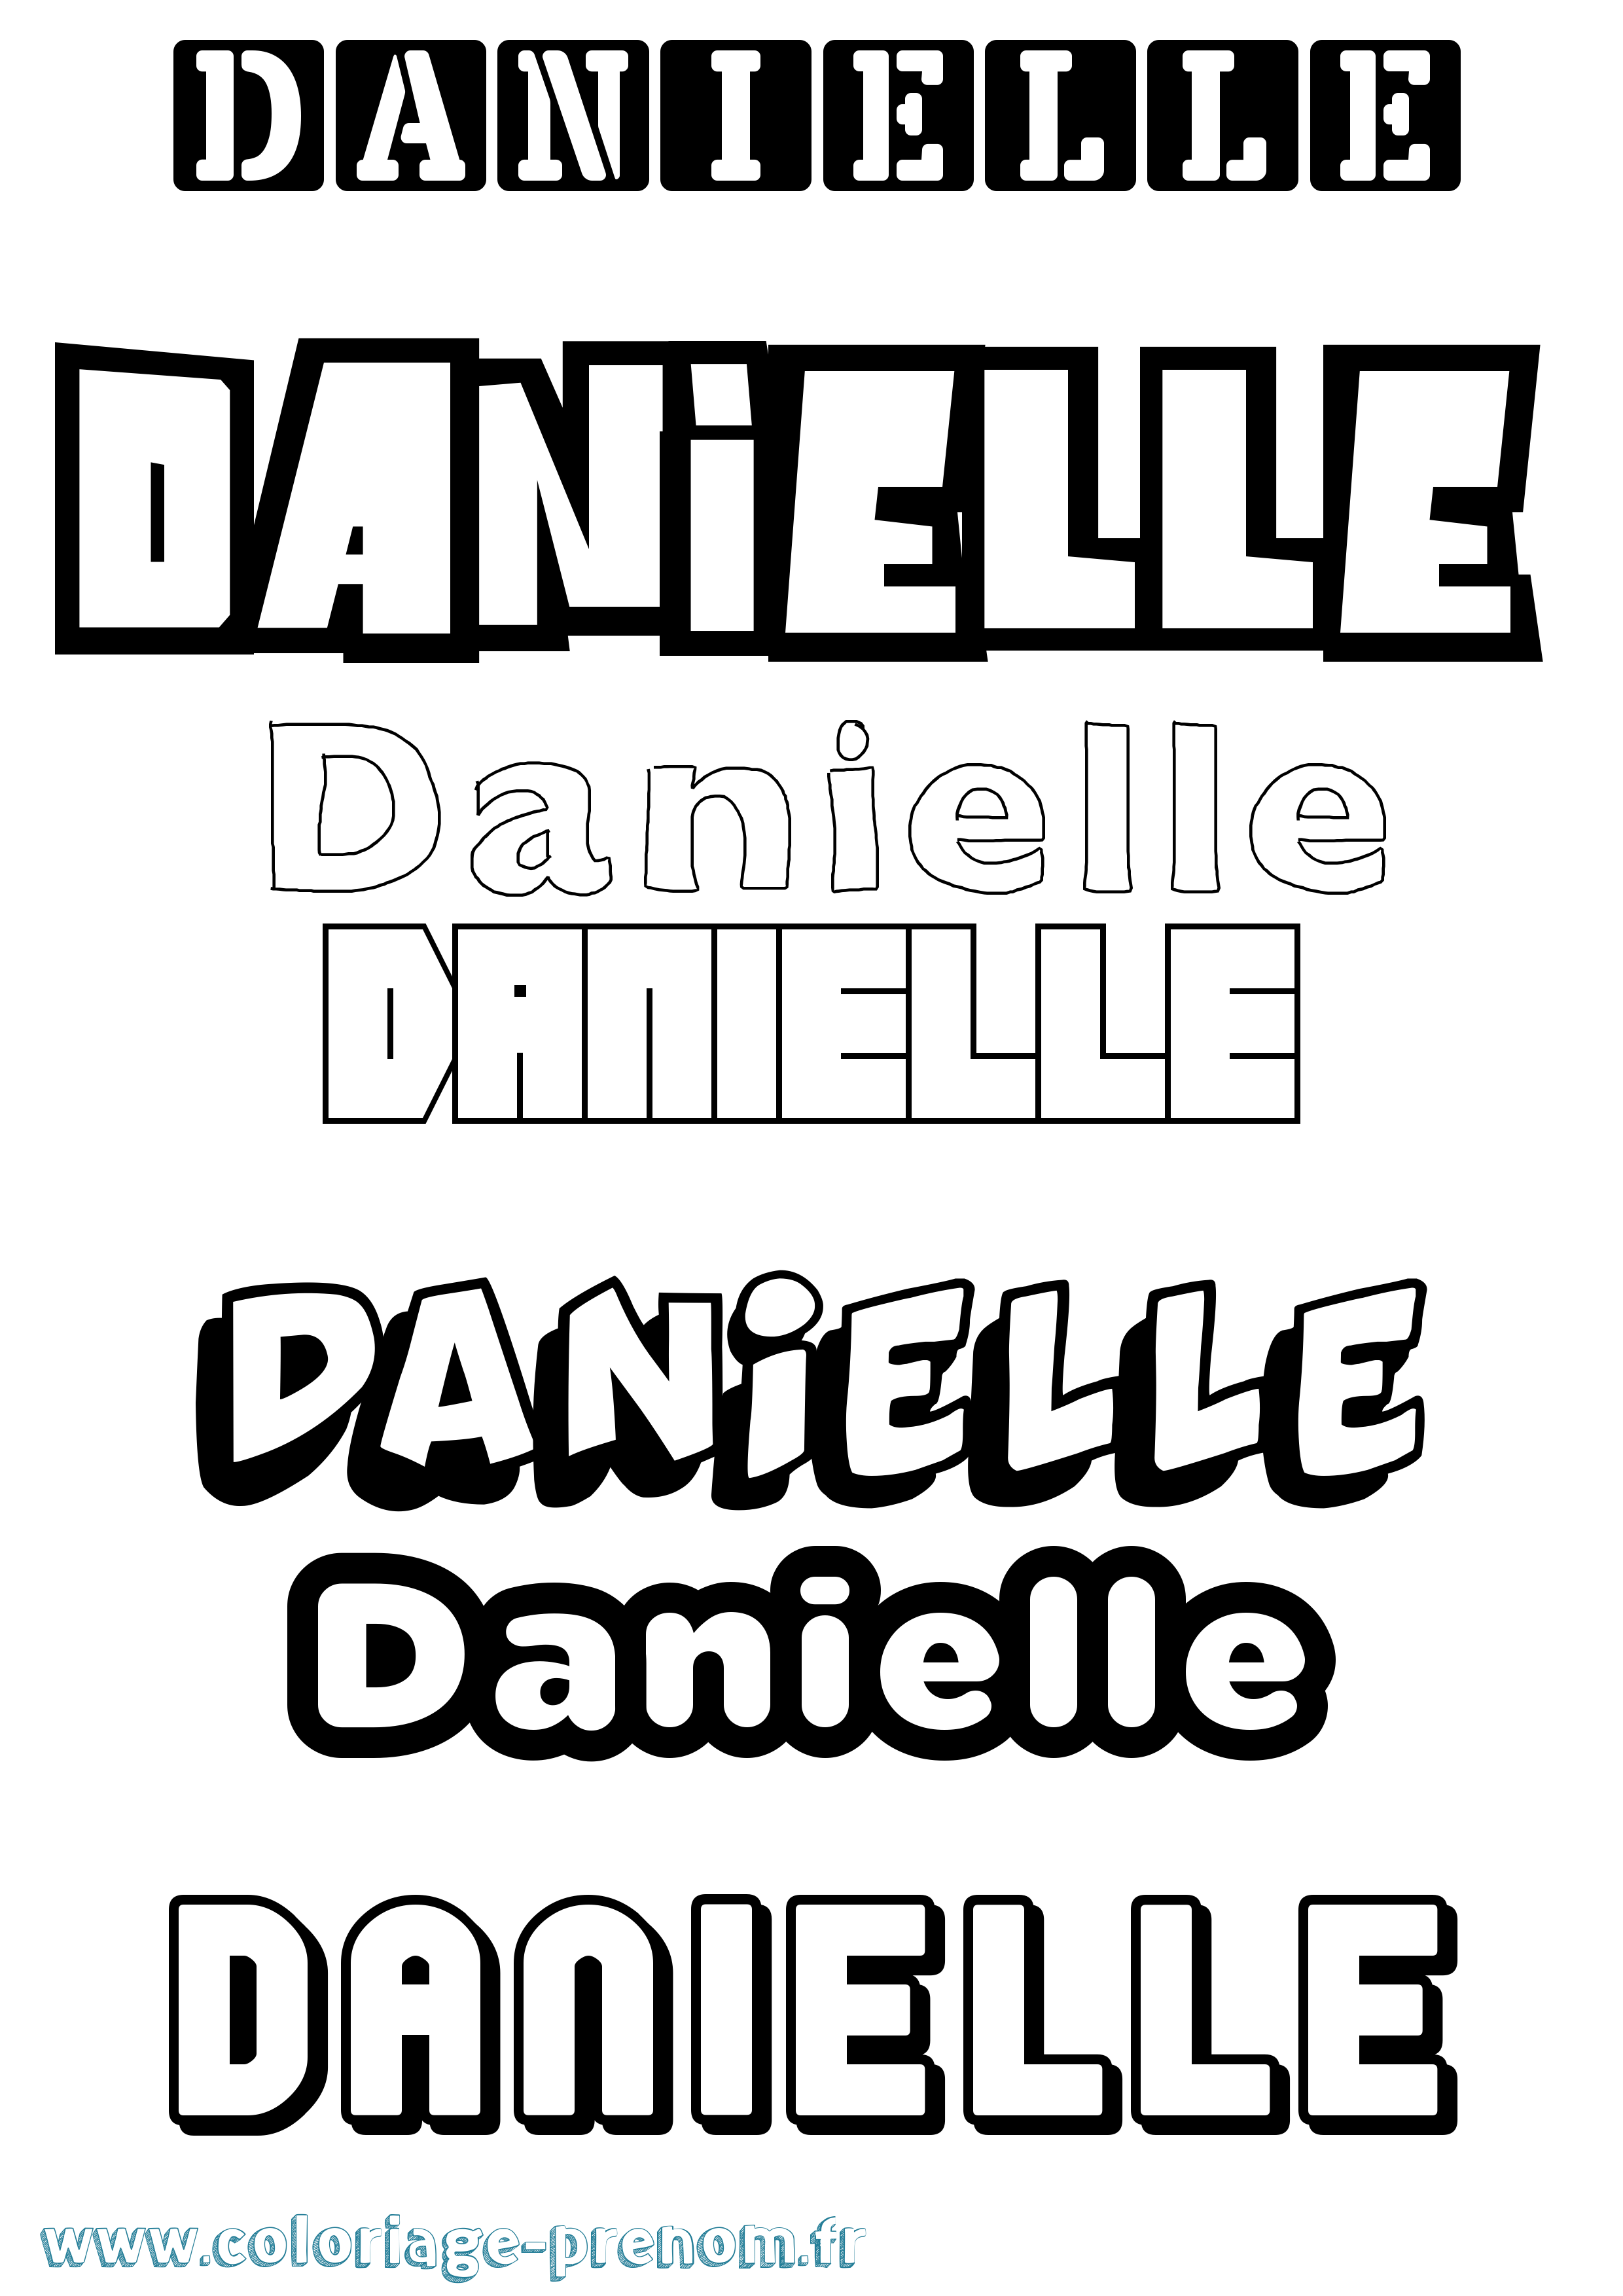 Coloriage prénom Danielle